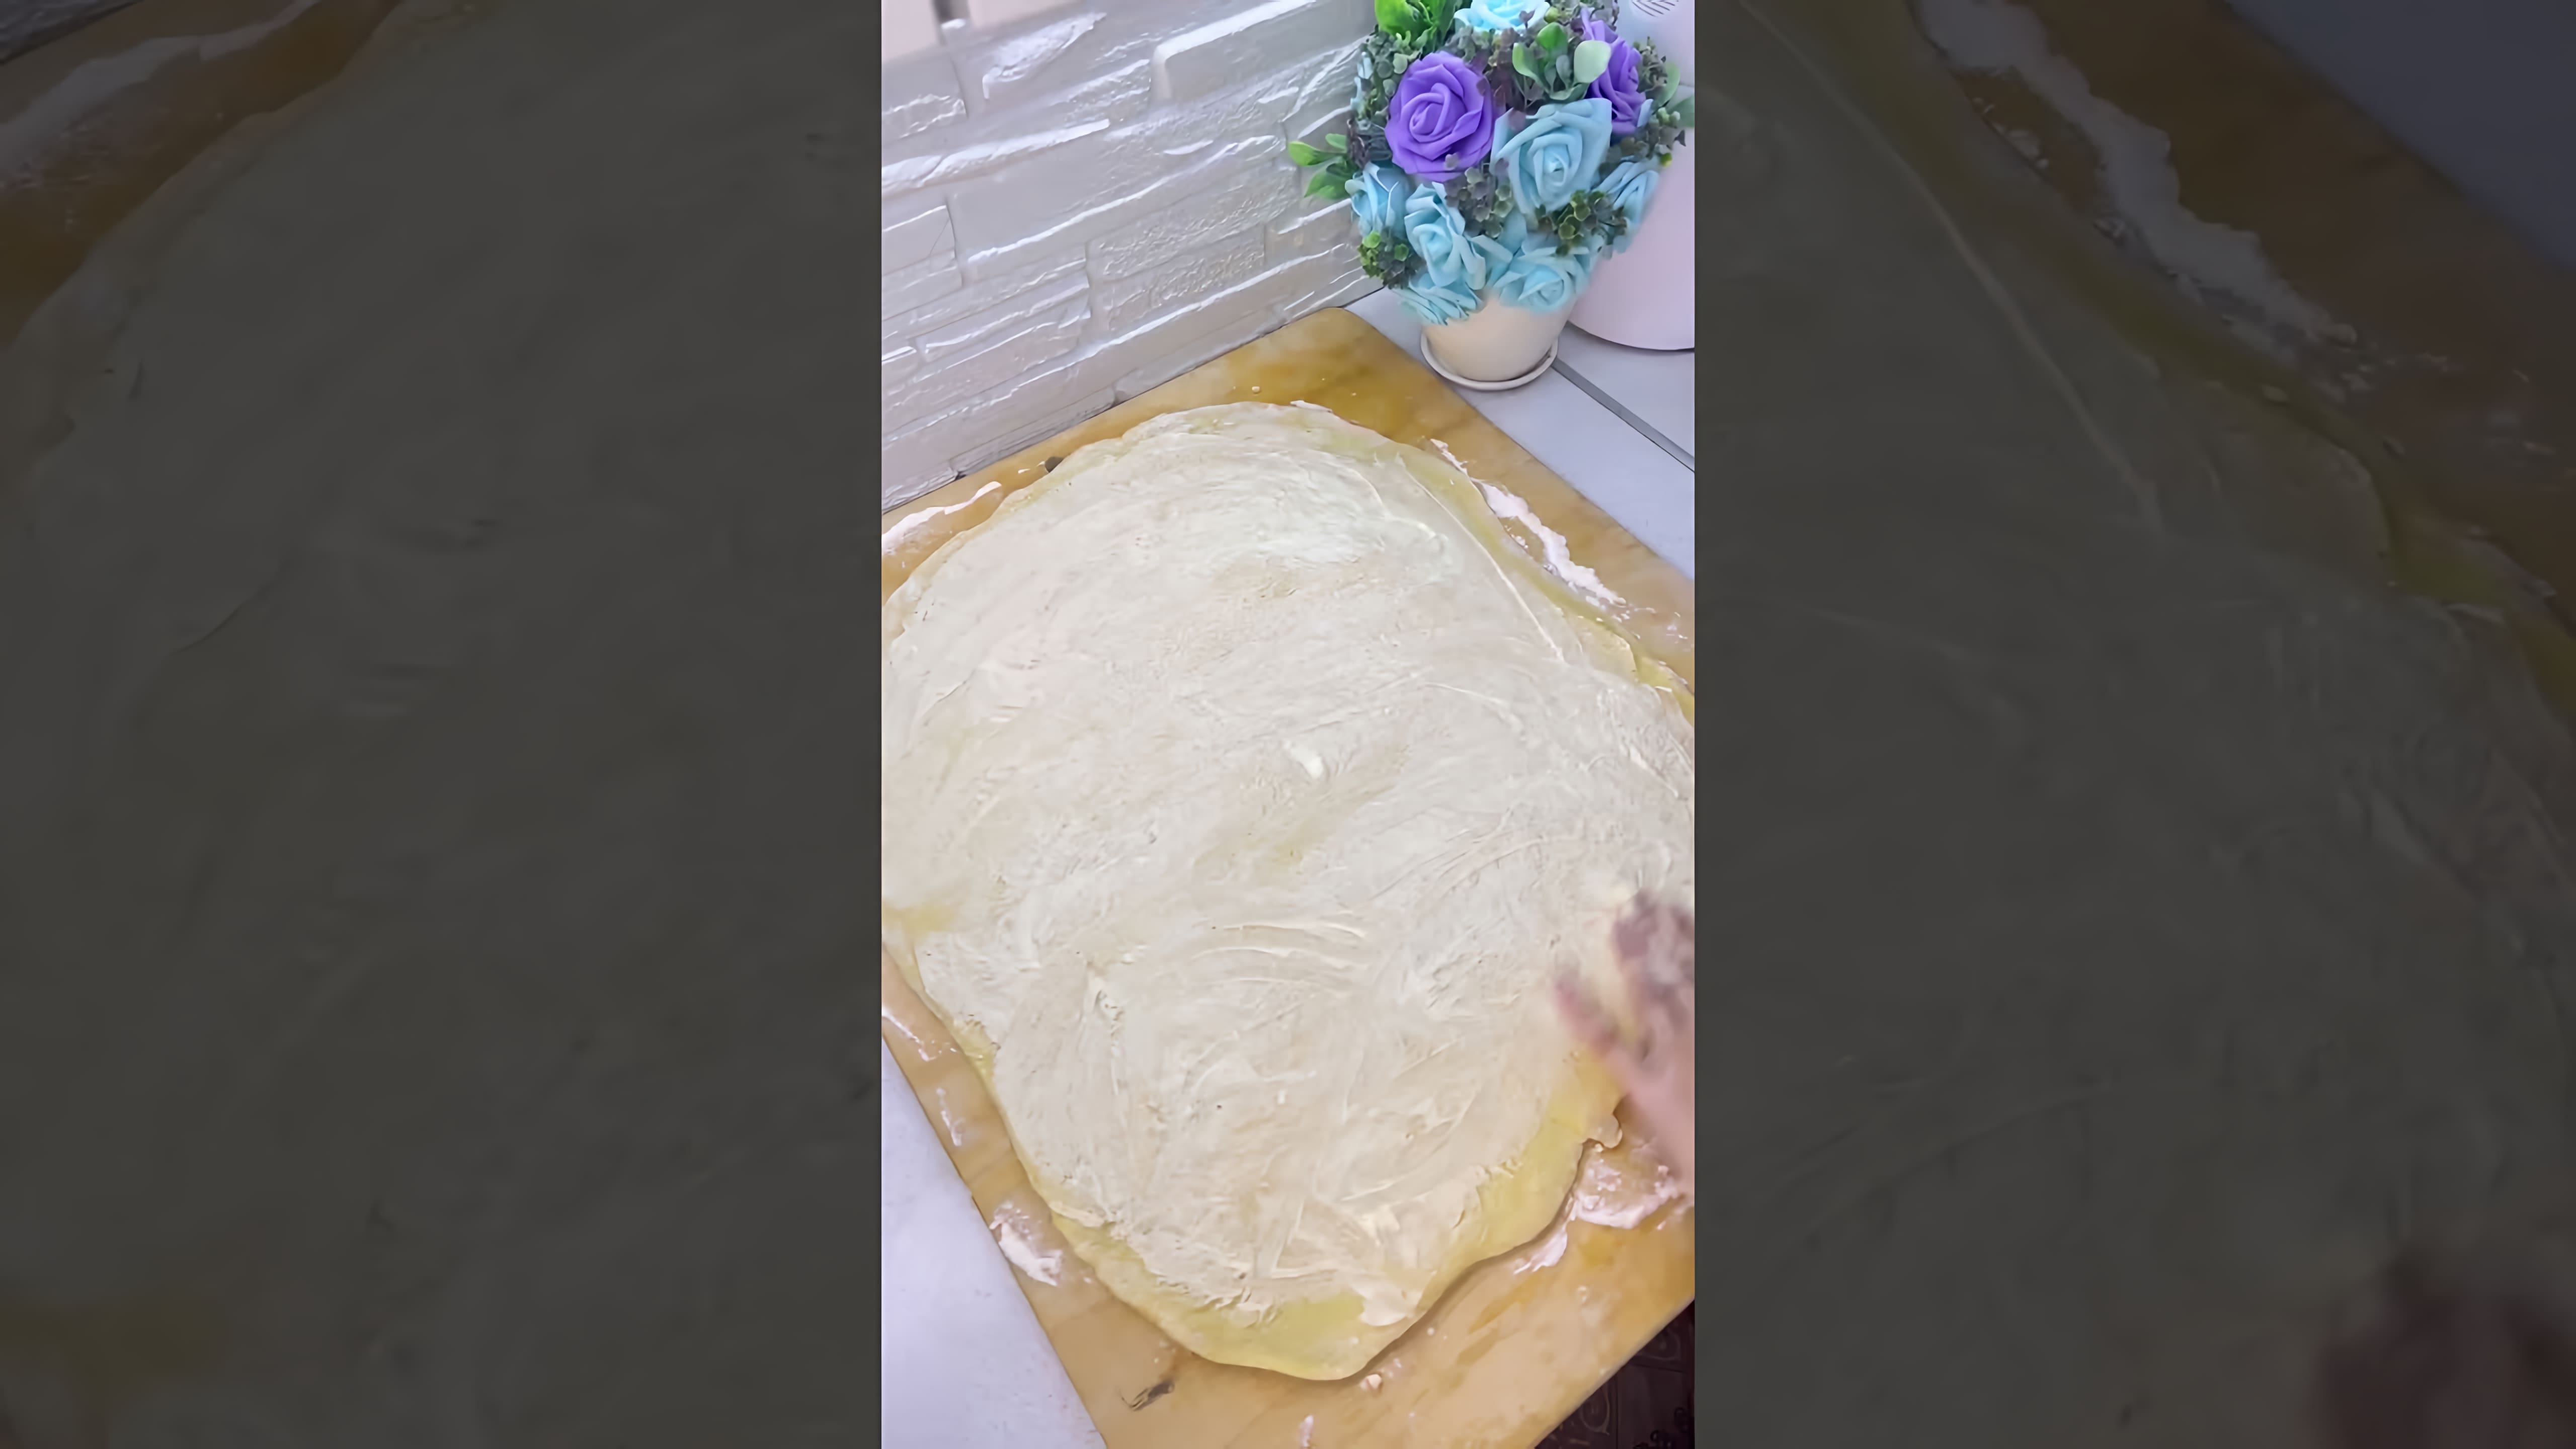 В этом видео демонстрируется процесс приготовления синнабонов - вкусных булочек с корицей